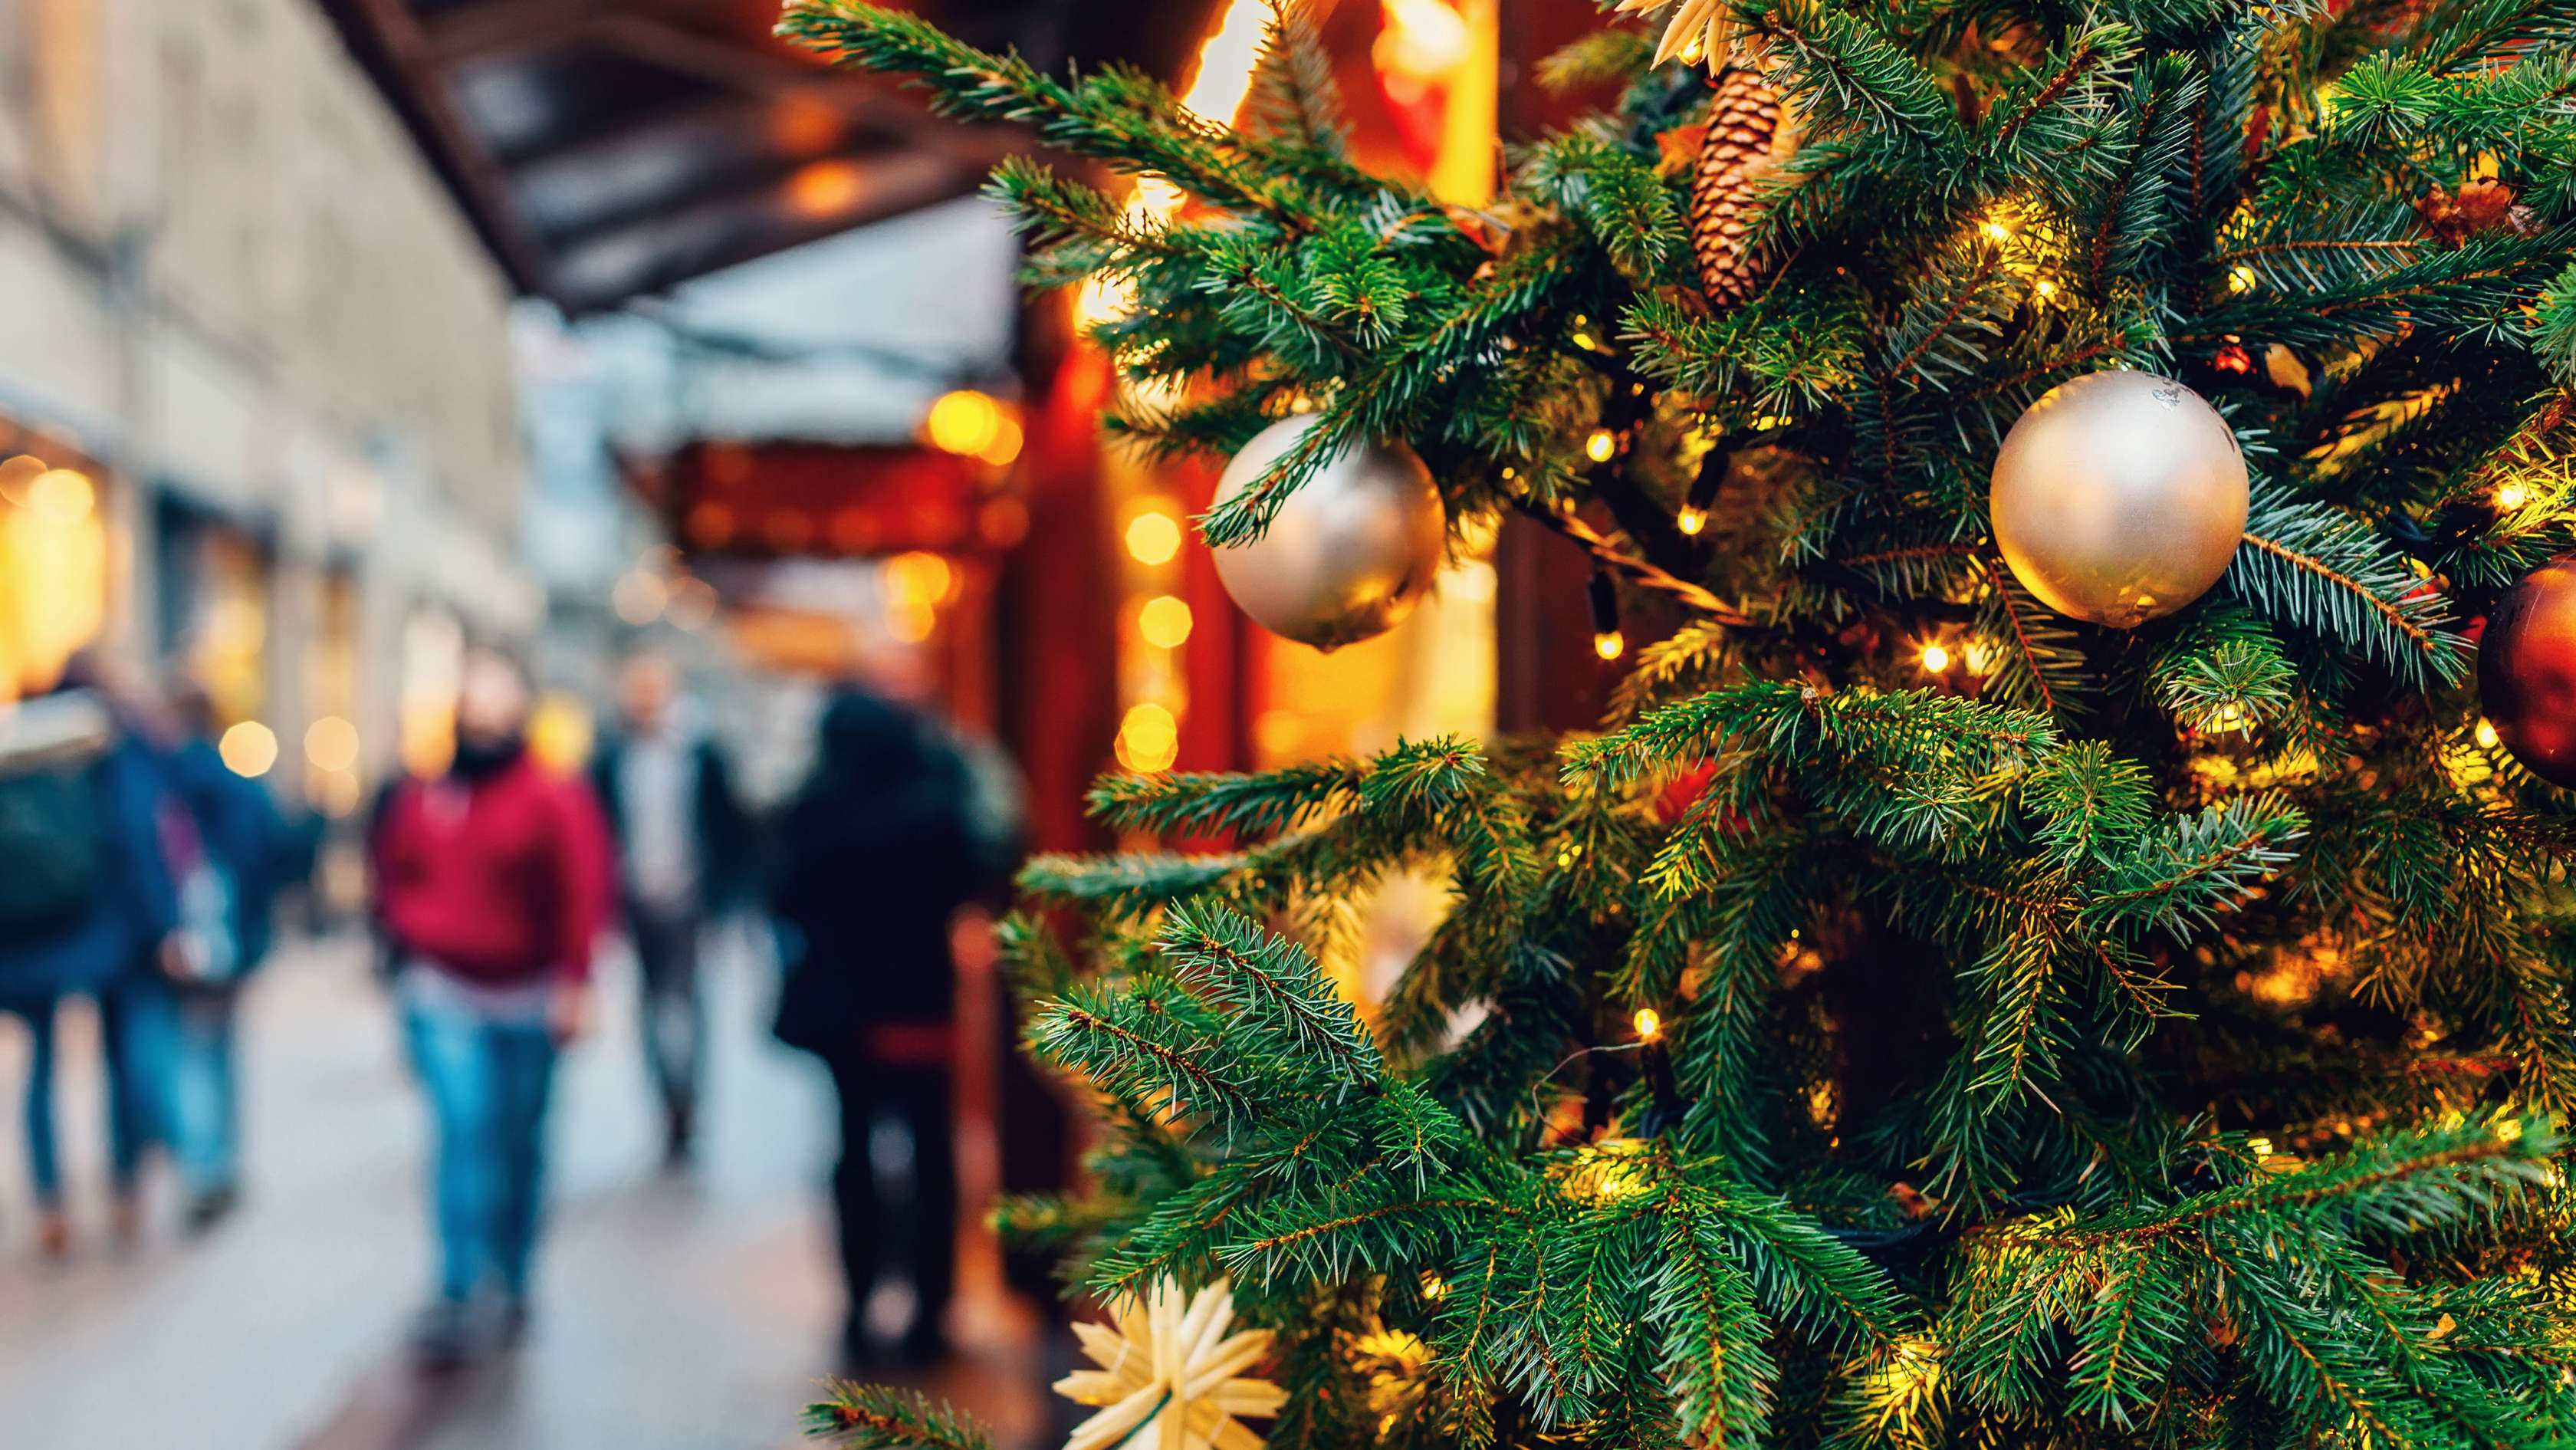 Szene auf einem Weihnachtsmarkt mit geschmücktem Christbaum im Vordergrund